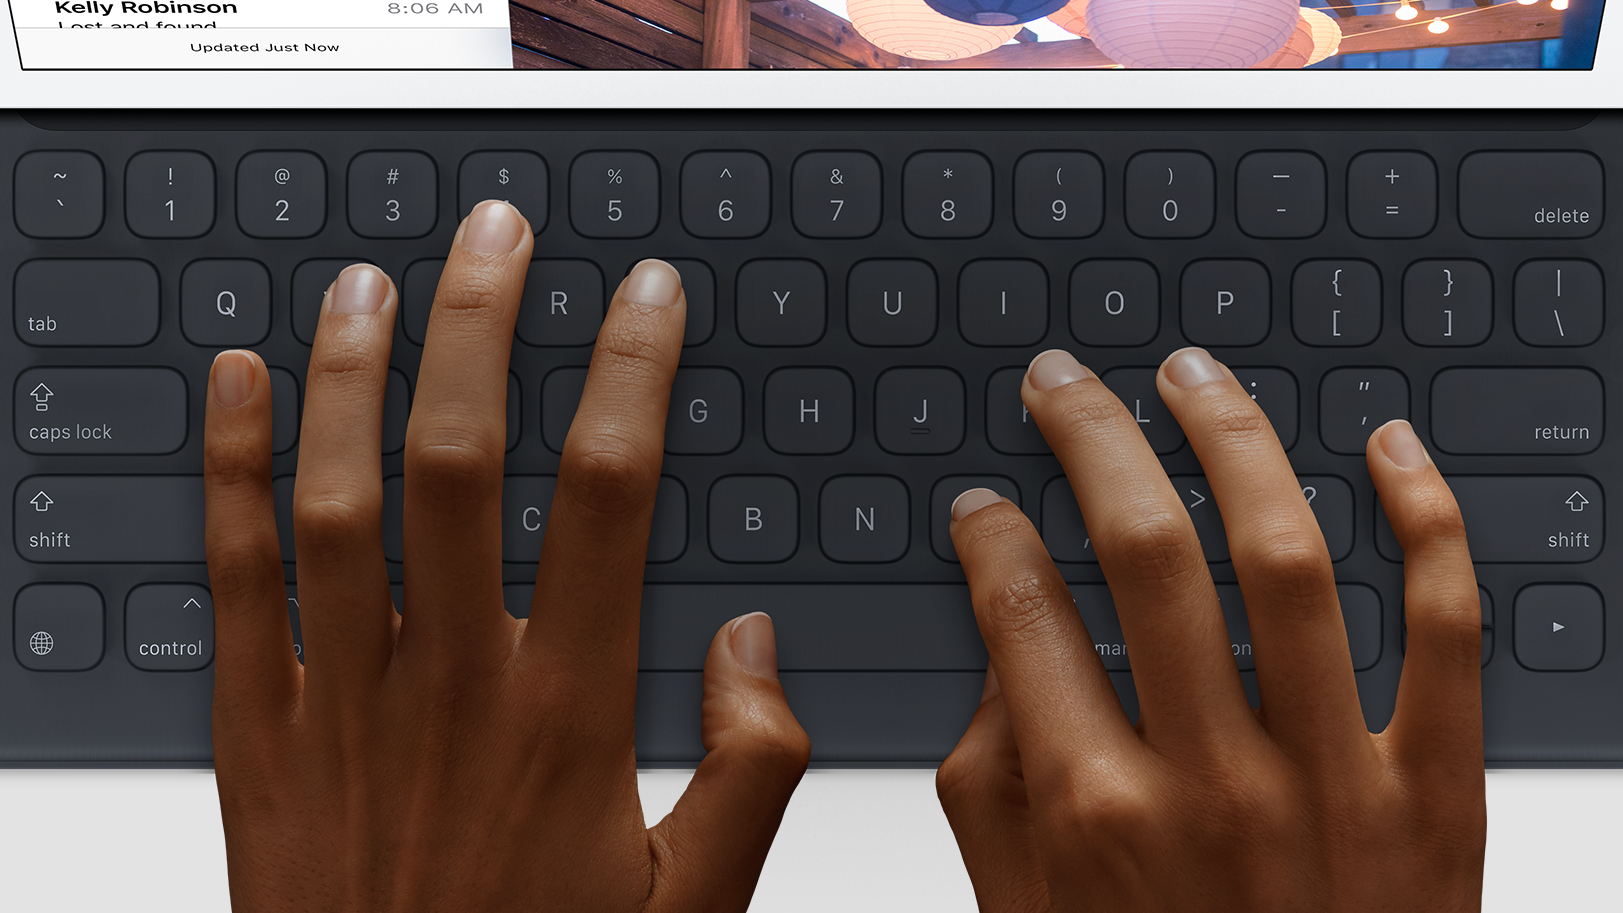 أخبار 6 فبراير 2020 يعمل iPadOS 13.4 على تحسين دعم لوحات المفاتيح المادية